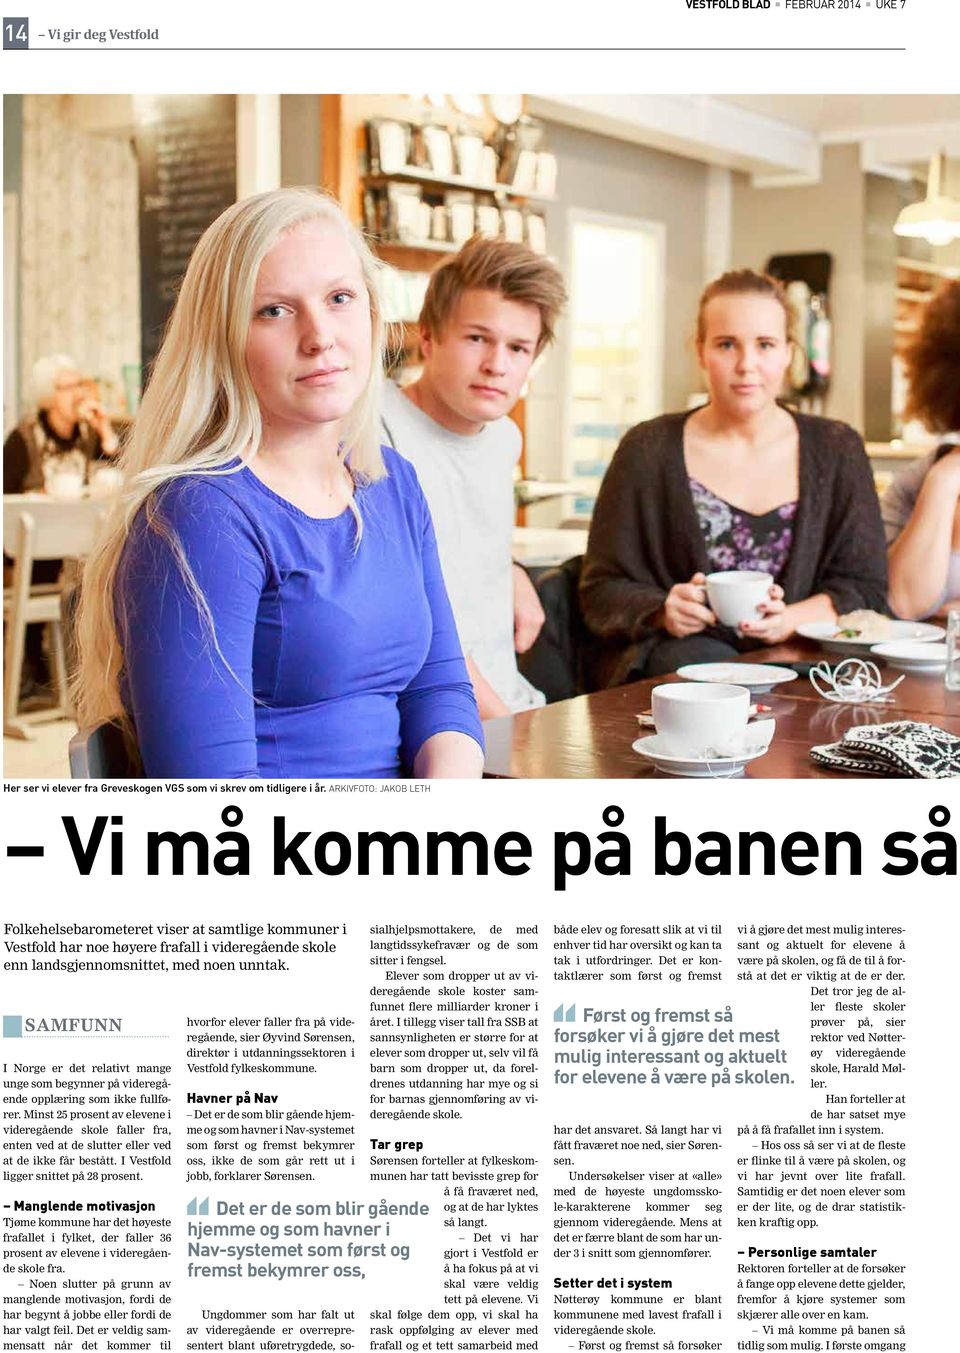 SAMFUNN I Norge er det relativt mange unge som begynner på videregående opplæring som ikke fullfører.